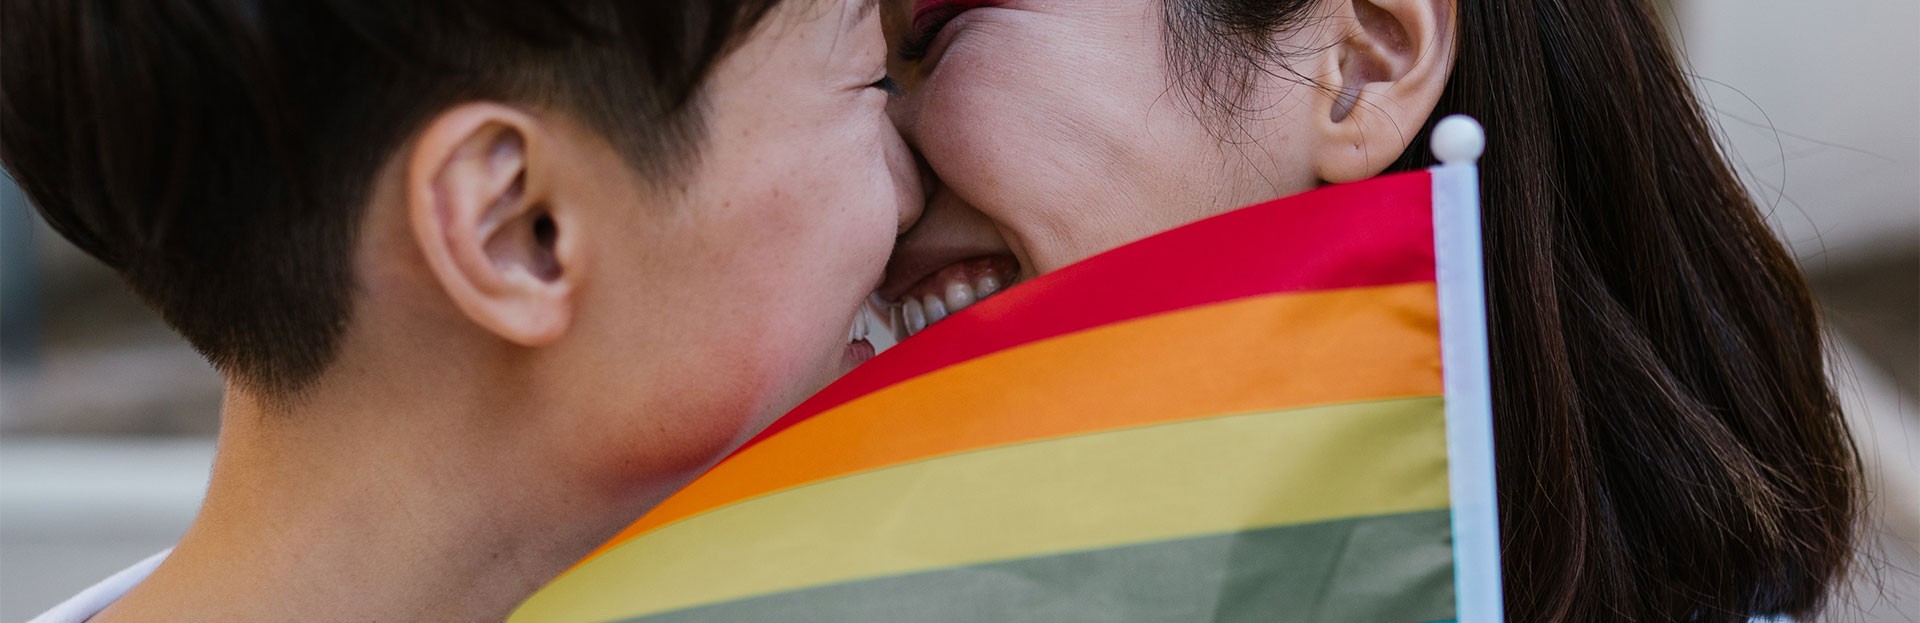 Dos mujeres junto a la bandera del Orgullo LGBT, en conmemoración del Día de la Visibilidad Lésbica.